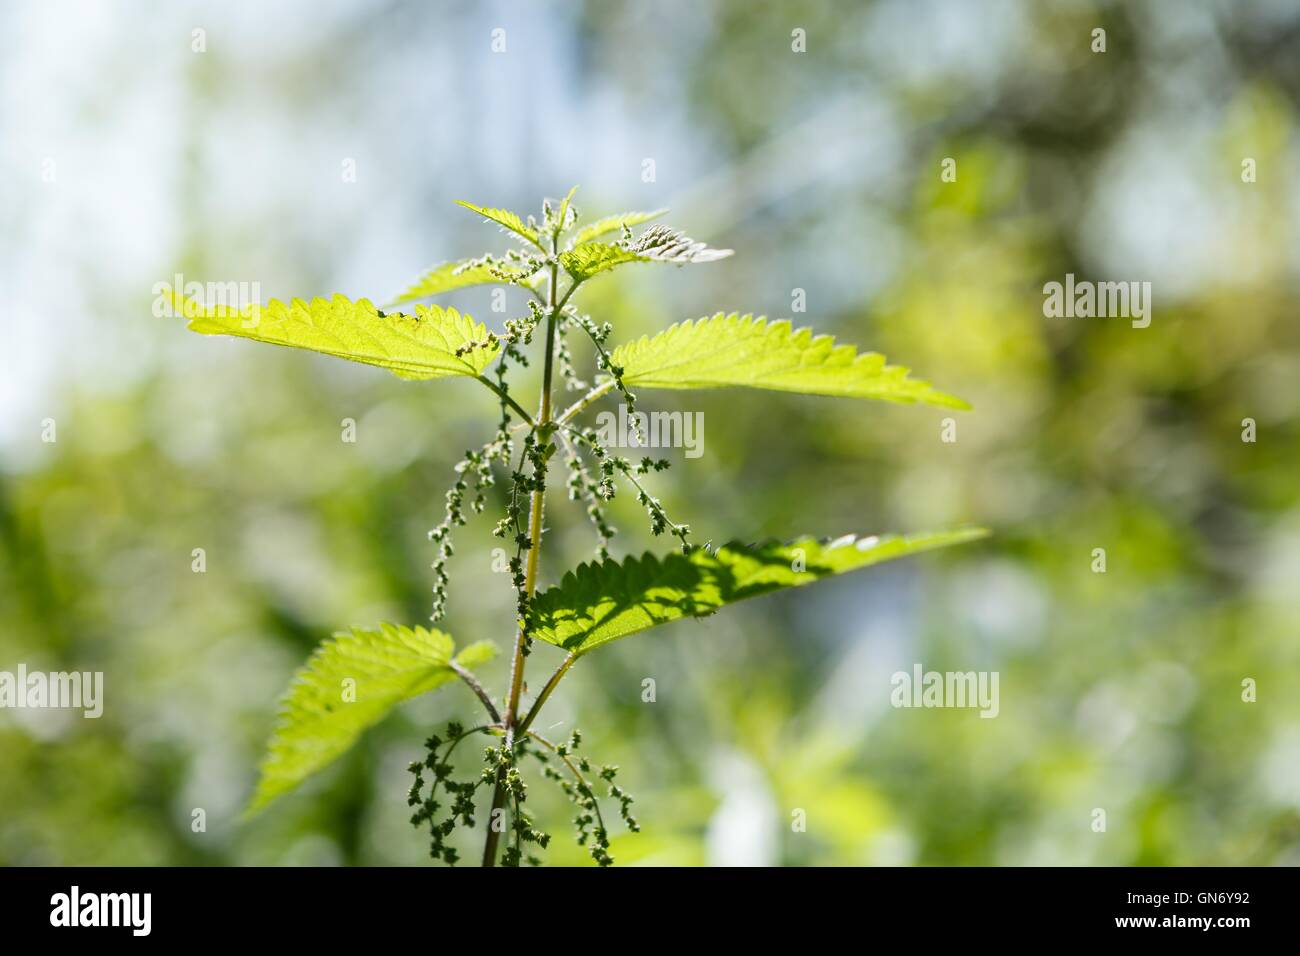 Herbal garden - nettle Stock Photo